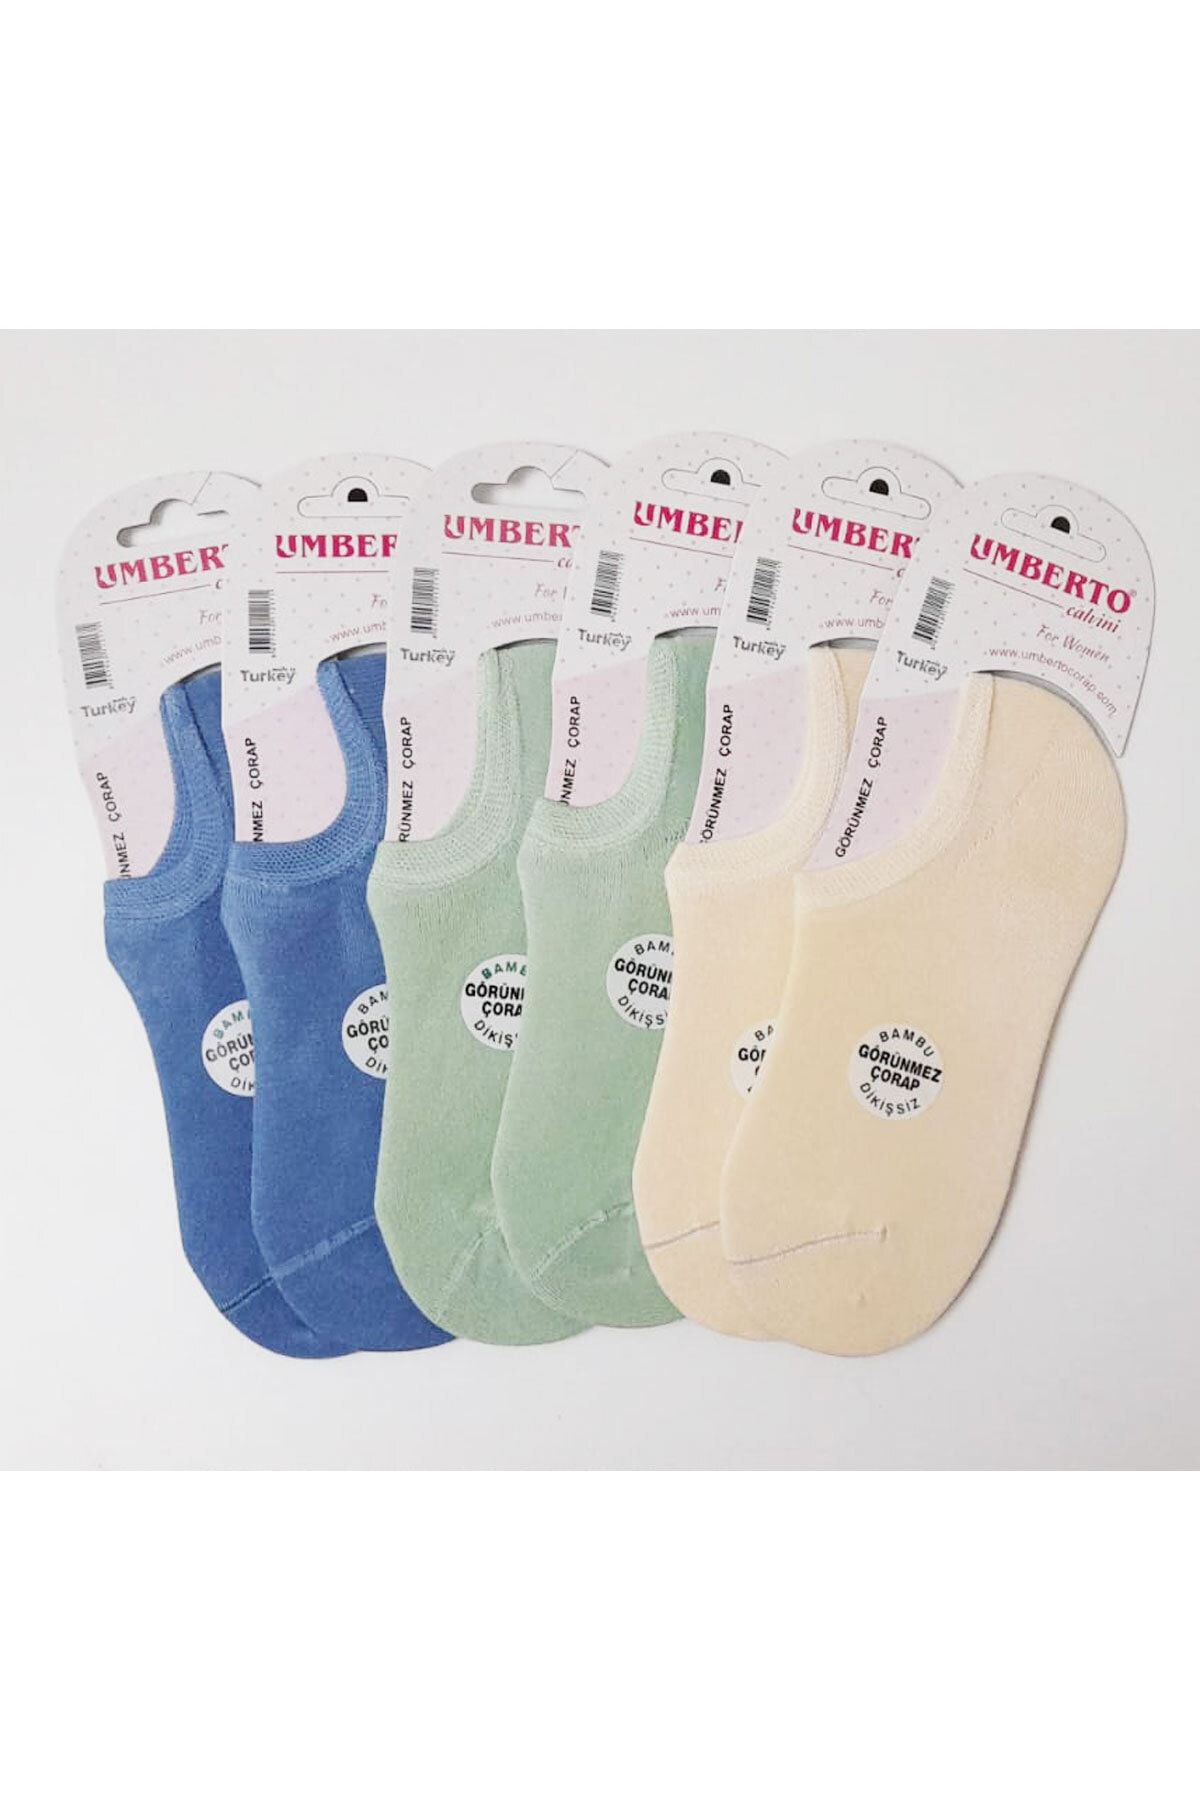 Umberto Kadın Renkli Dikişsiz Bambu Soket Çorap 6 Adet